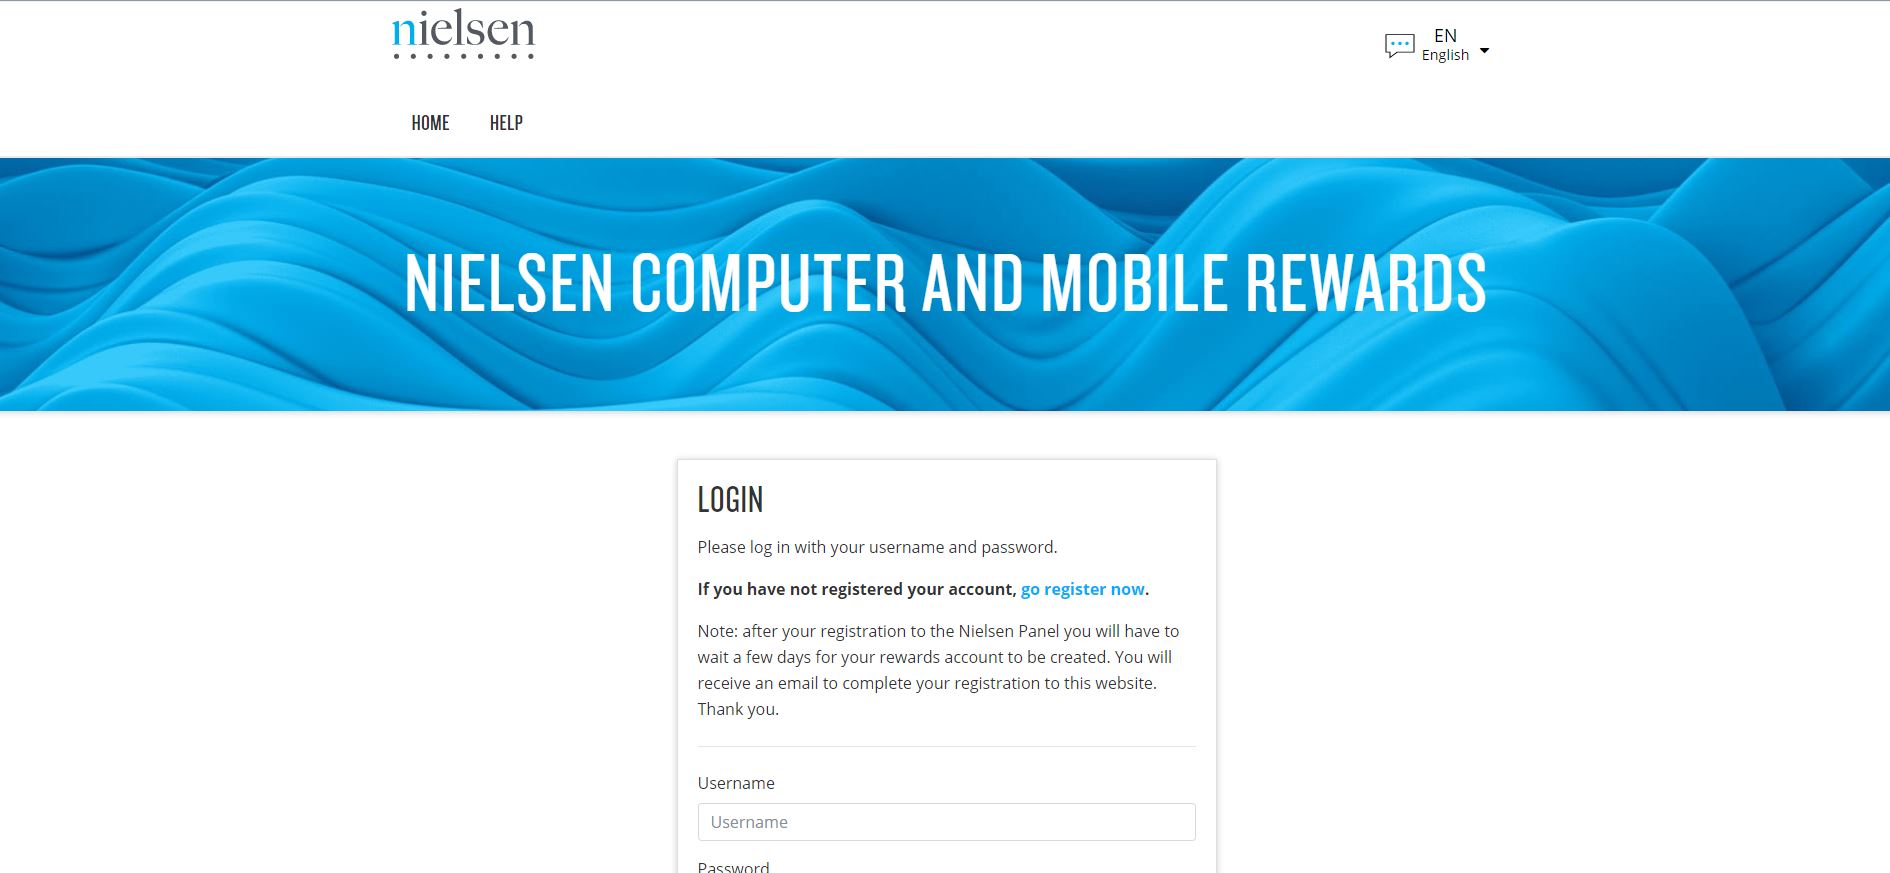 Nielsen homepage